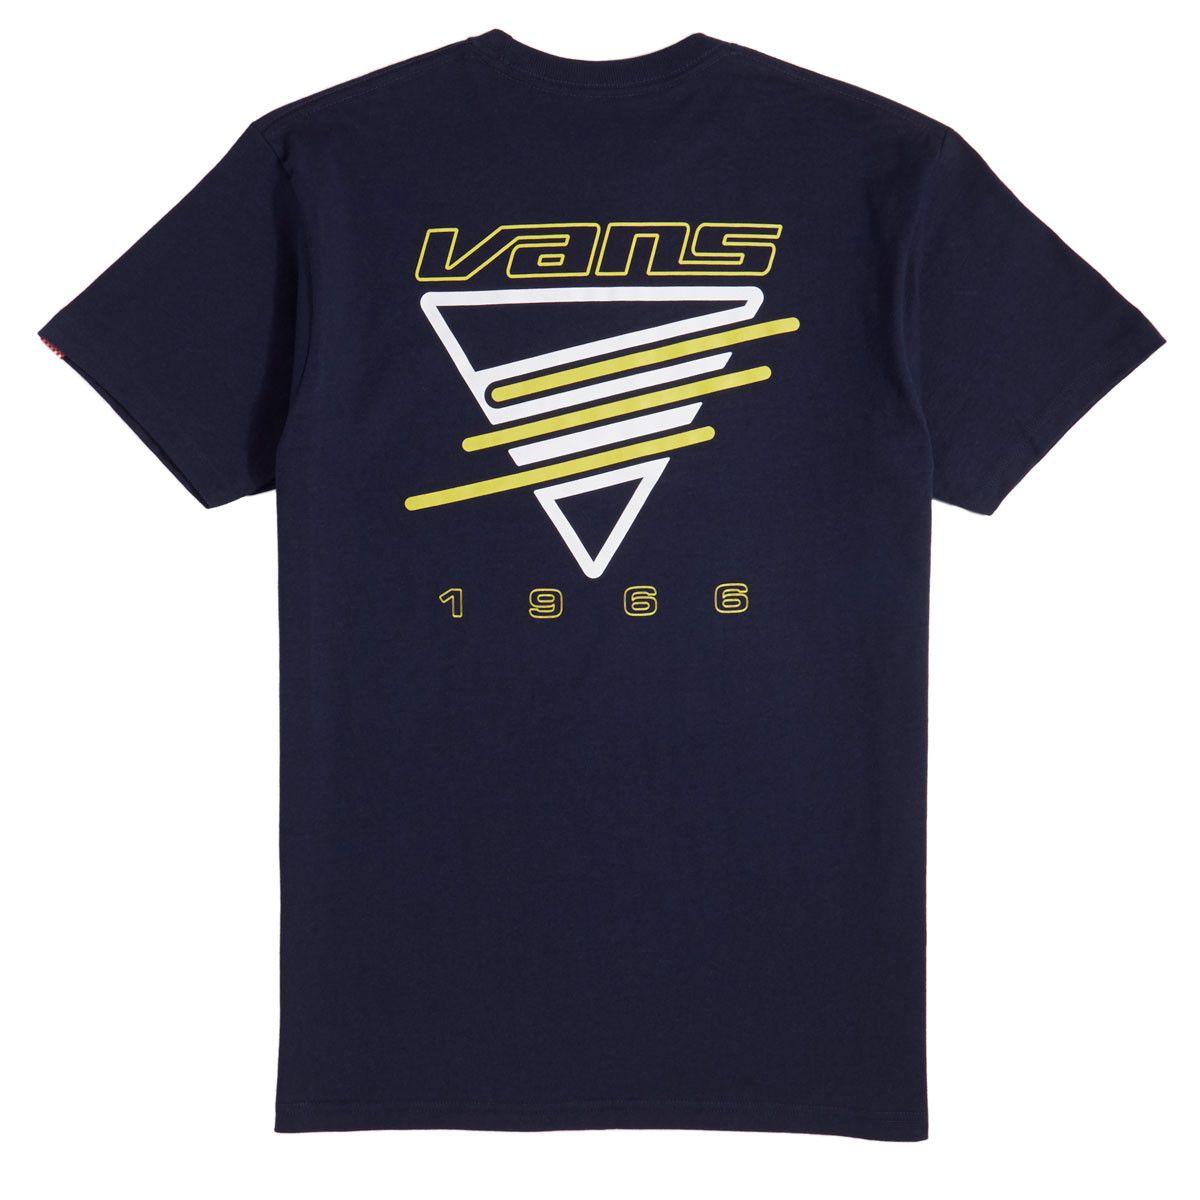 Cool Neon Vans Logo - Vans Neon Triangle T-Shirt - Navy